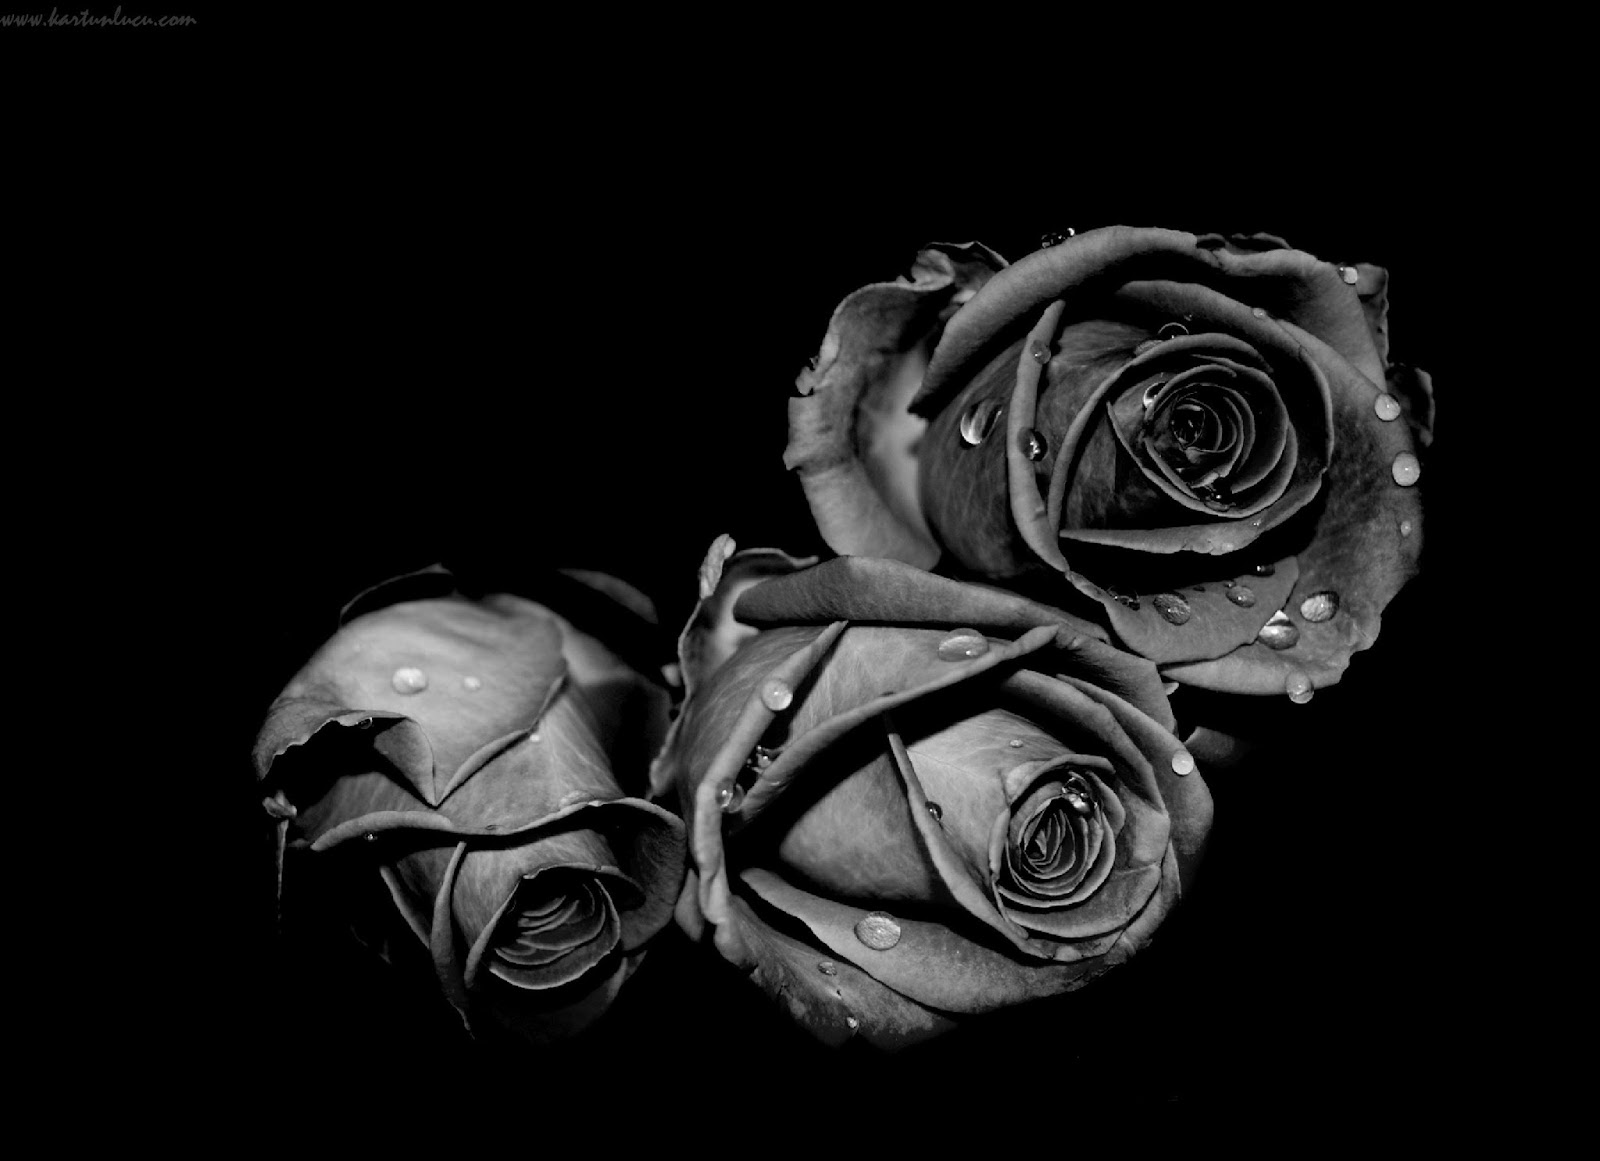 fond d'écran hitam putih,noir,photographie monochrome,photographie de nature morte,blanc,noir et blanc